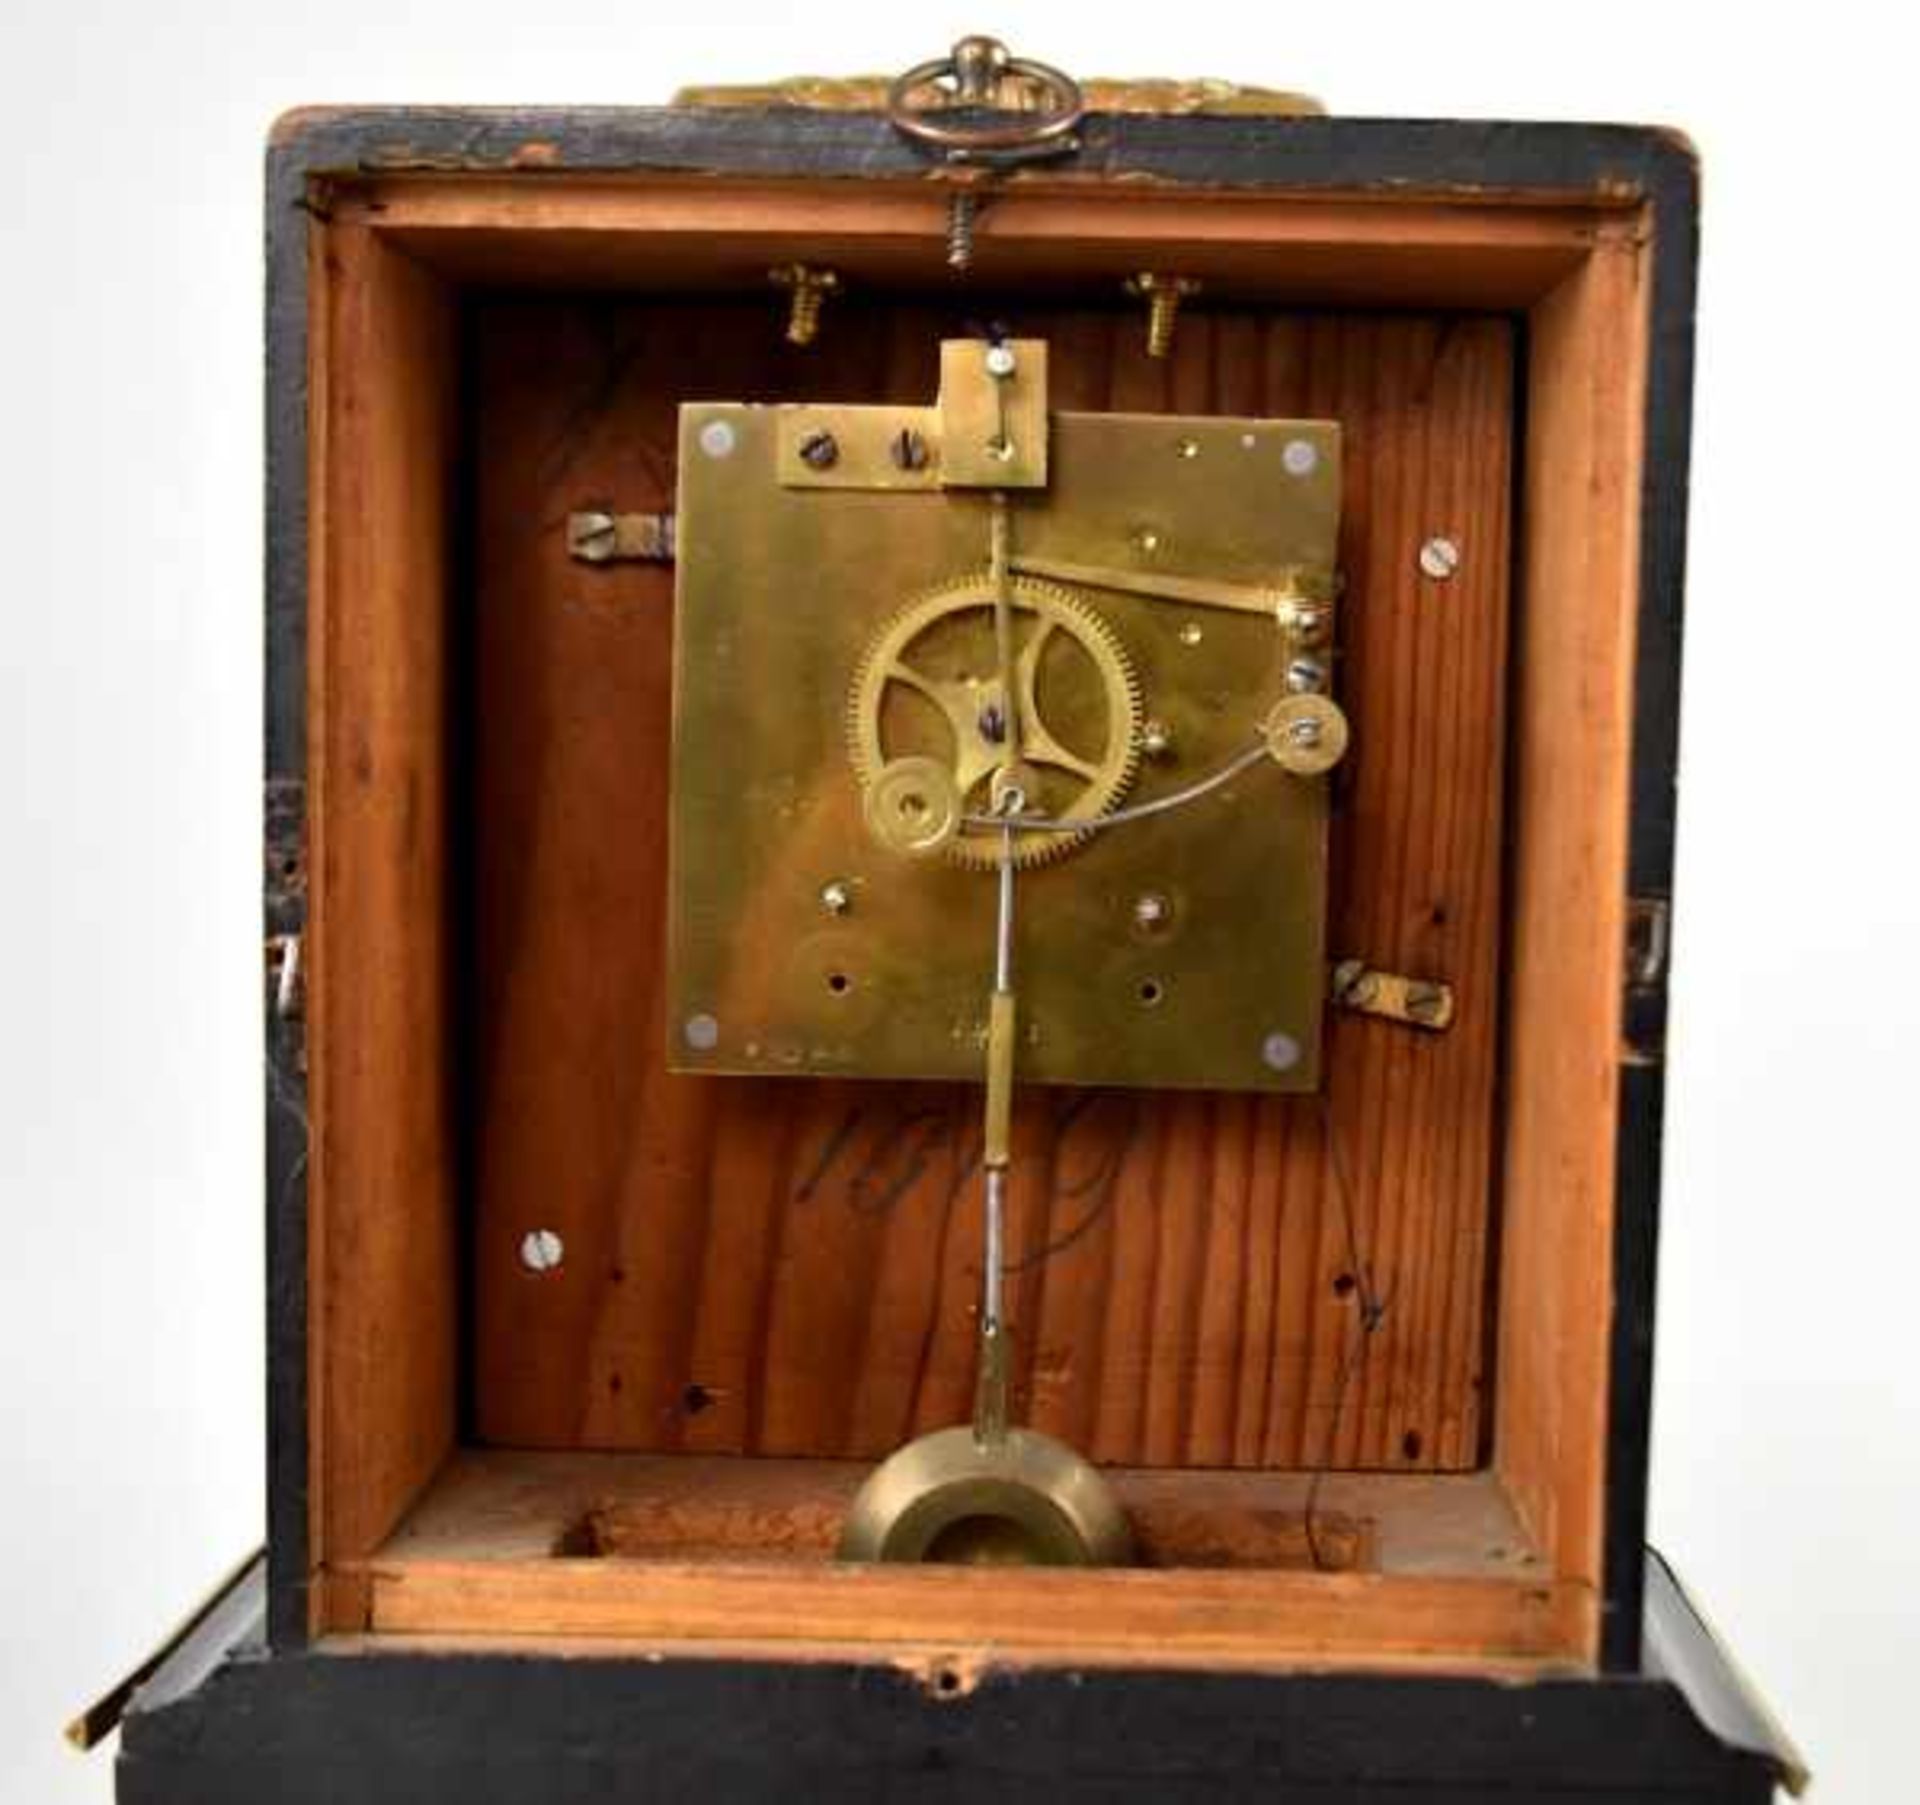 TISCHUHR mit Tragegriff, "Carriage Clock", rechteckiges schwarz lackiertes Holzgehäuse mit - Bild 3 aus 3